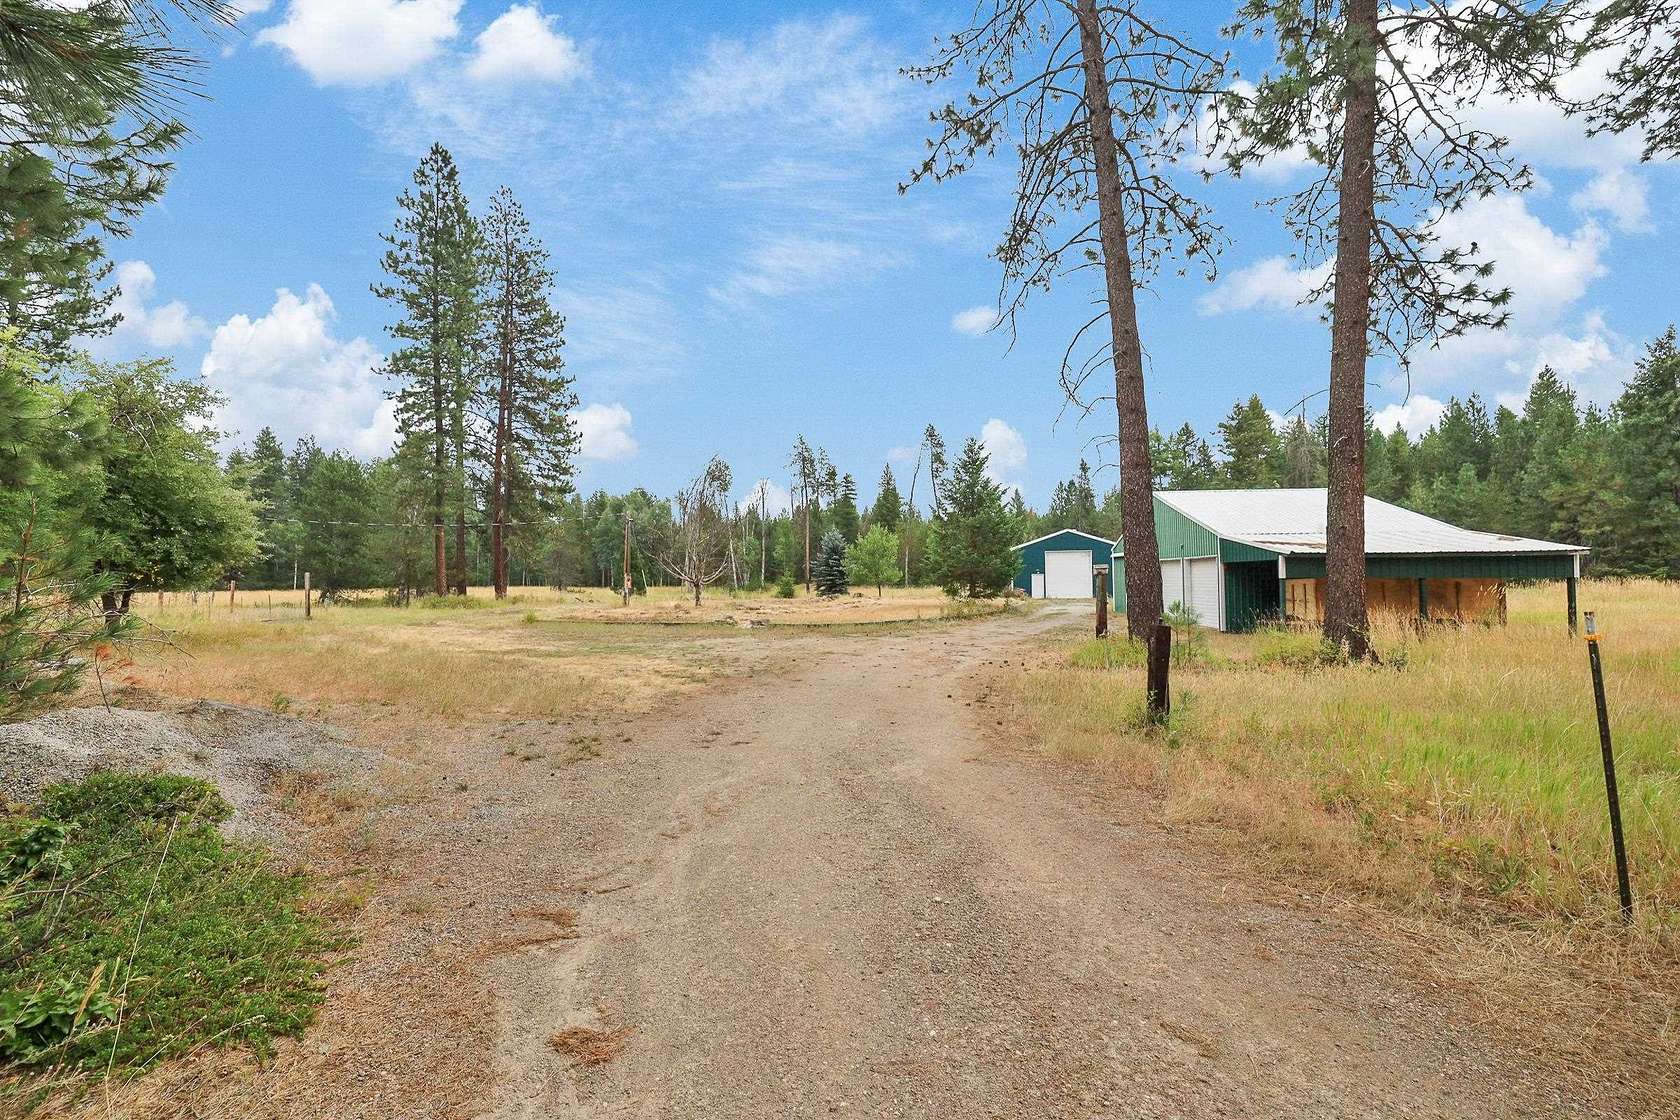 7.3 Acres of Land for Sale in Deer Park, Washington